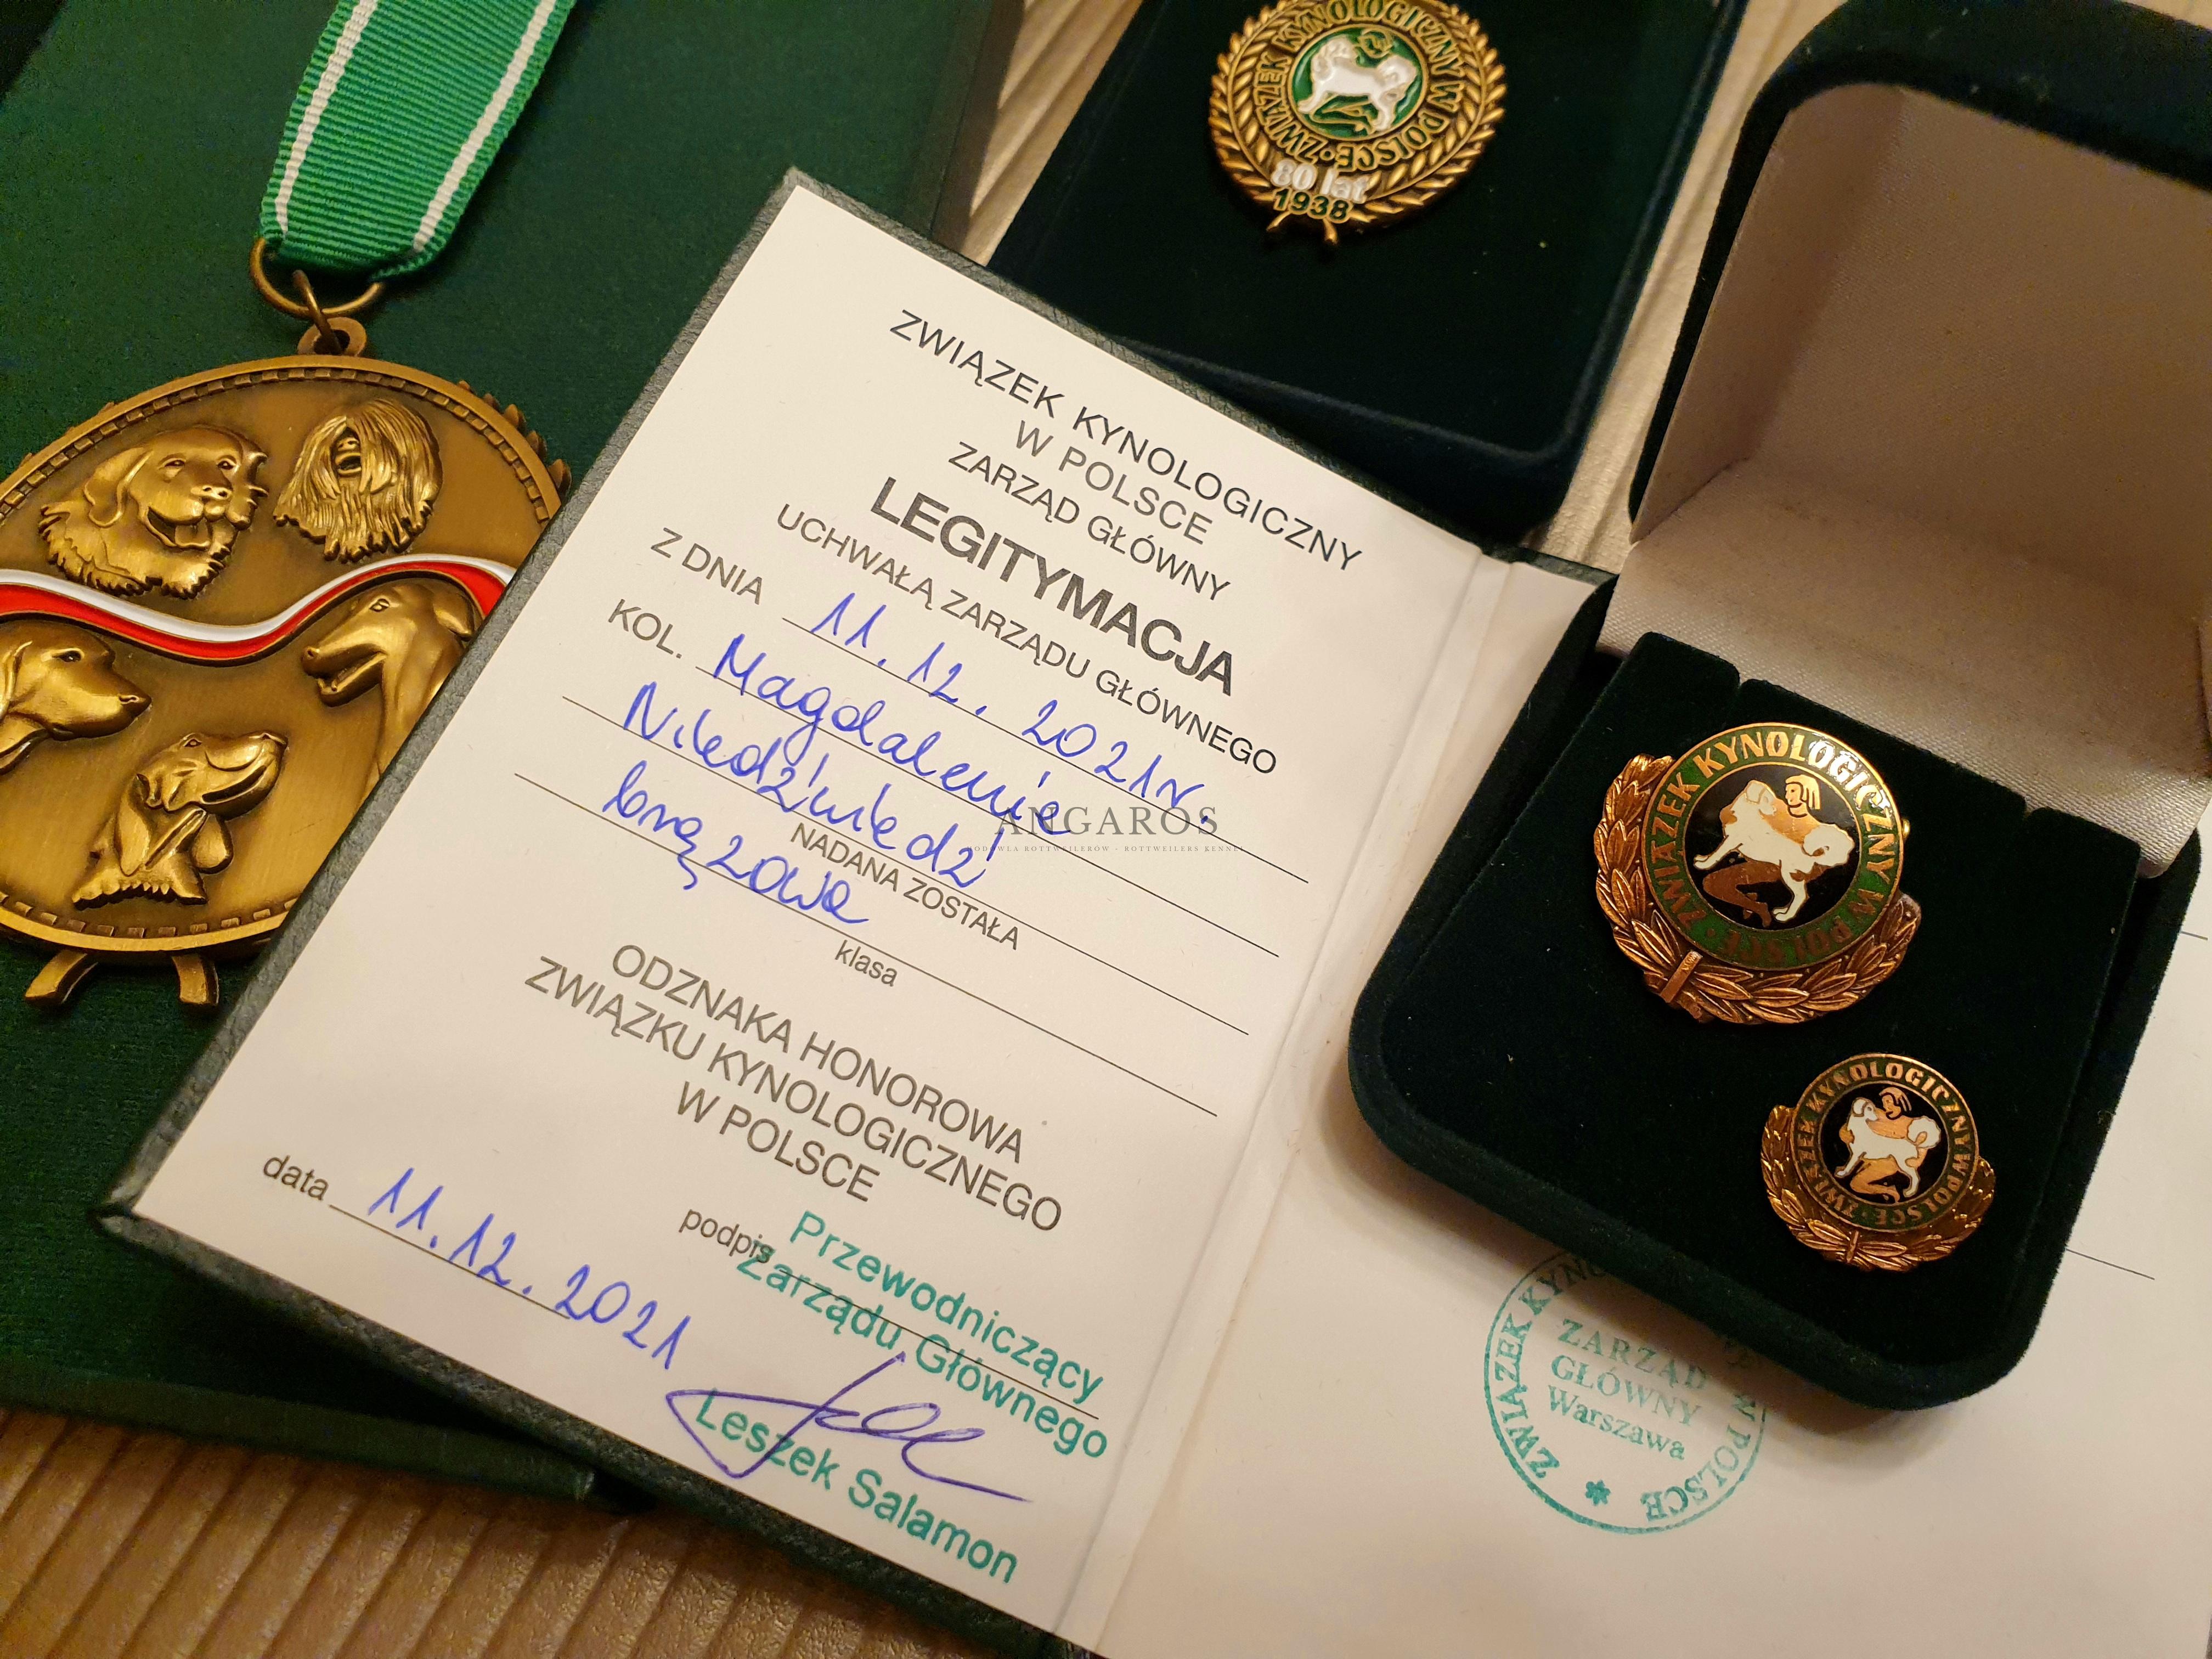 Brązowa Odznaka Honorowa Związku Kynologicznego w Polsce! Jeszcze to do mnie nie dotarło, ale tak! To wydarzyło się naprawdę! | Rottweiler - Hodowla Rottweilerów Angaros - Rottweilers - Rottweilery